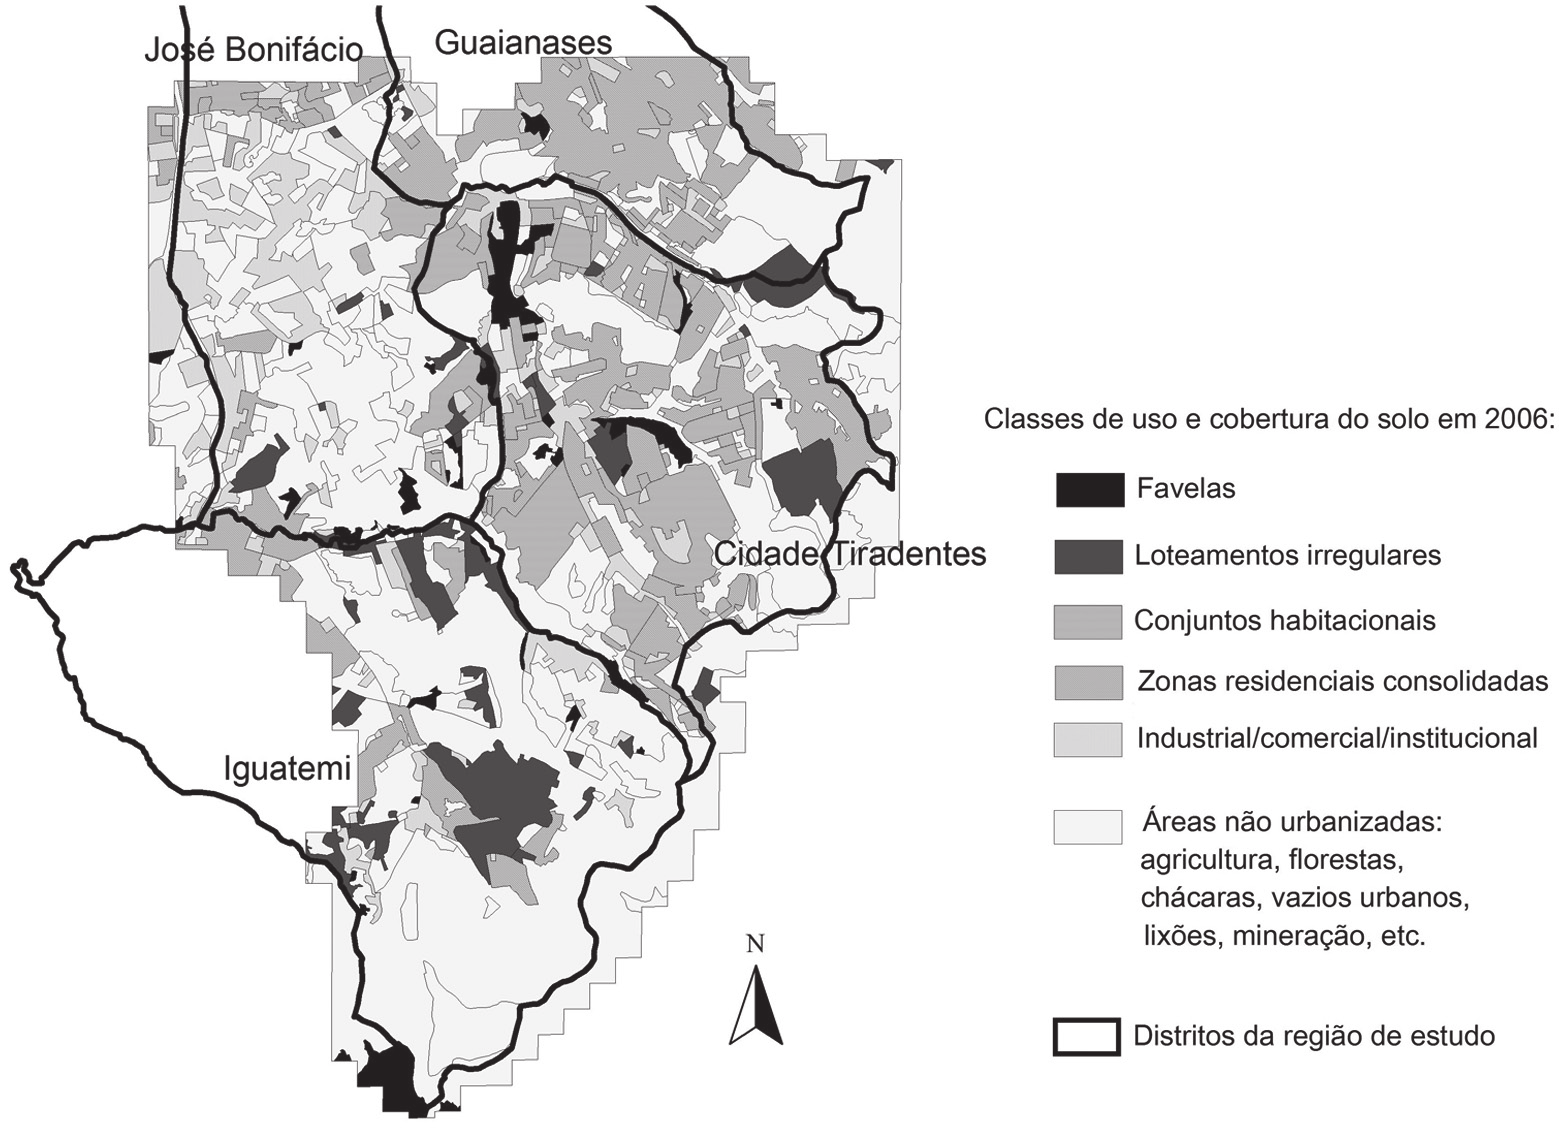 MAPA 2 Classes de uso e cobertura do solo a partir da classificação de imagem de satélite IKONOS Distrito de Cidade Tiradentes e entorno 2006 Fonte: Imagem de satélite IKONOS da região de Cidade